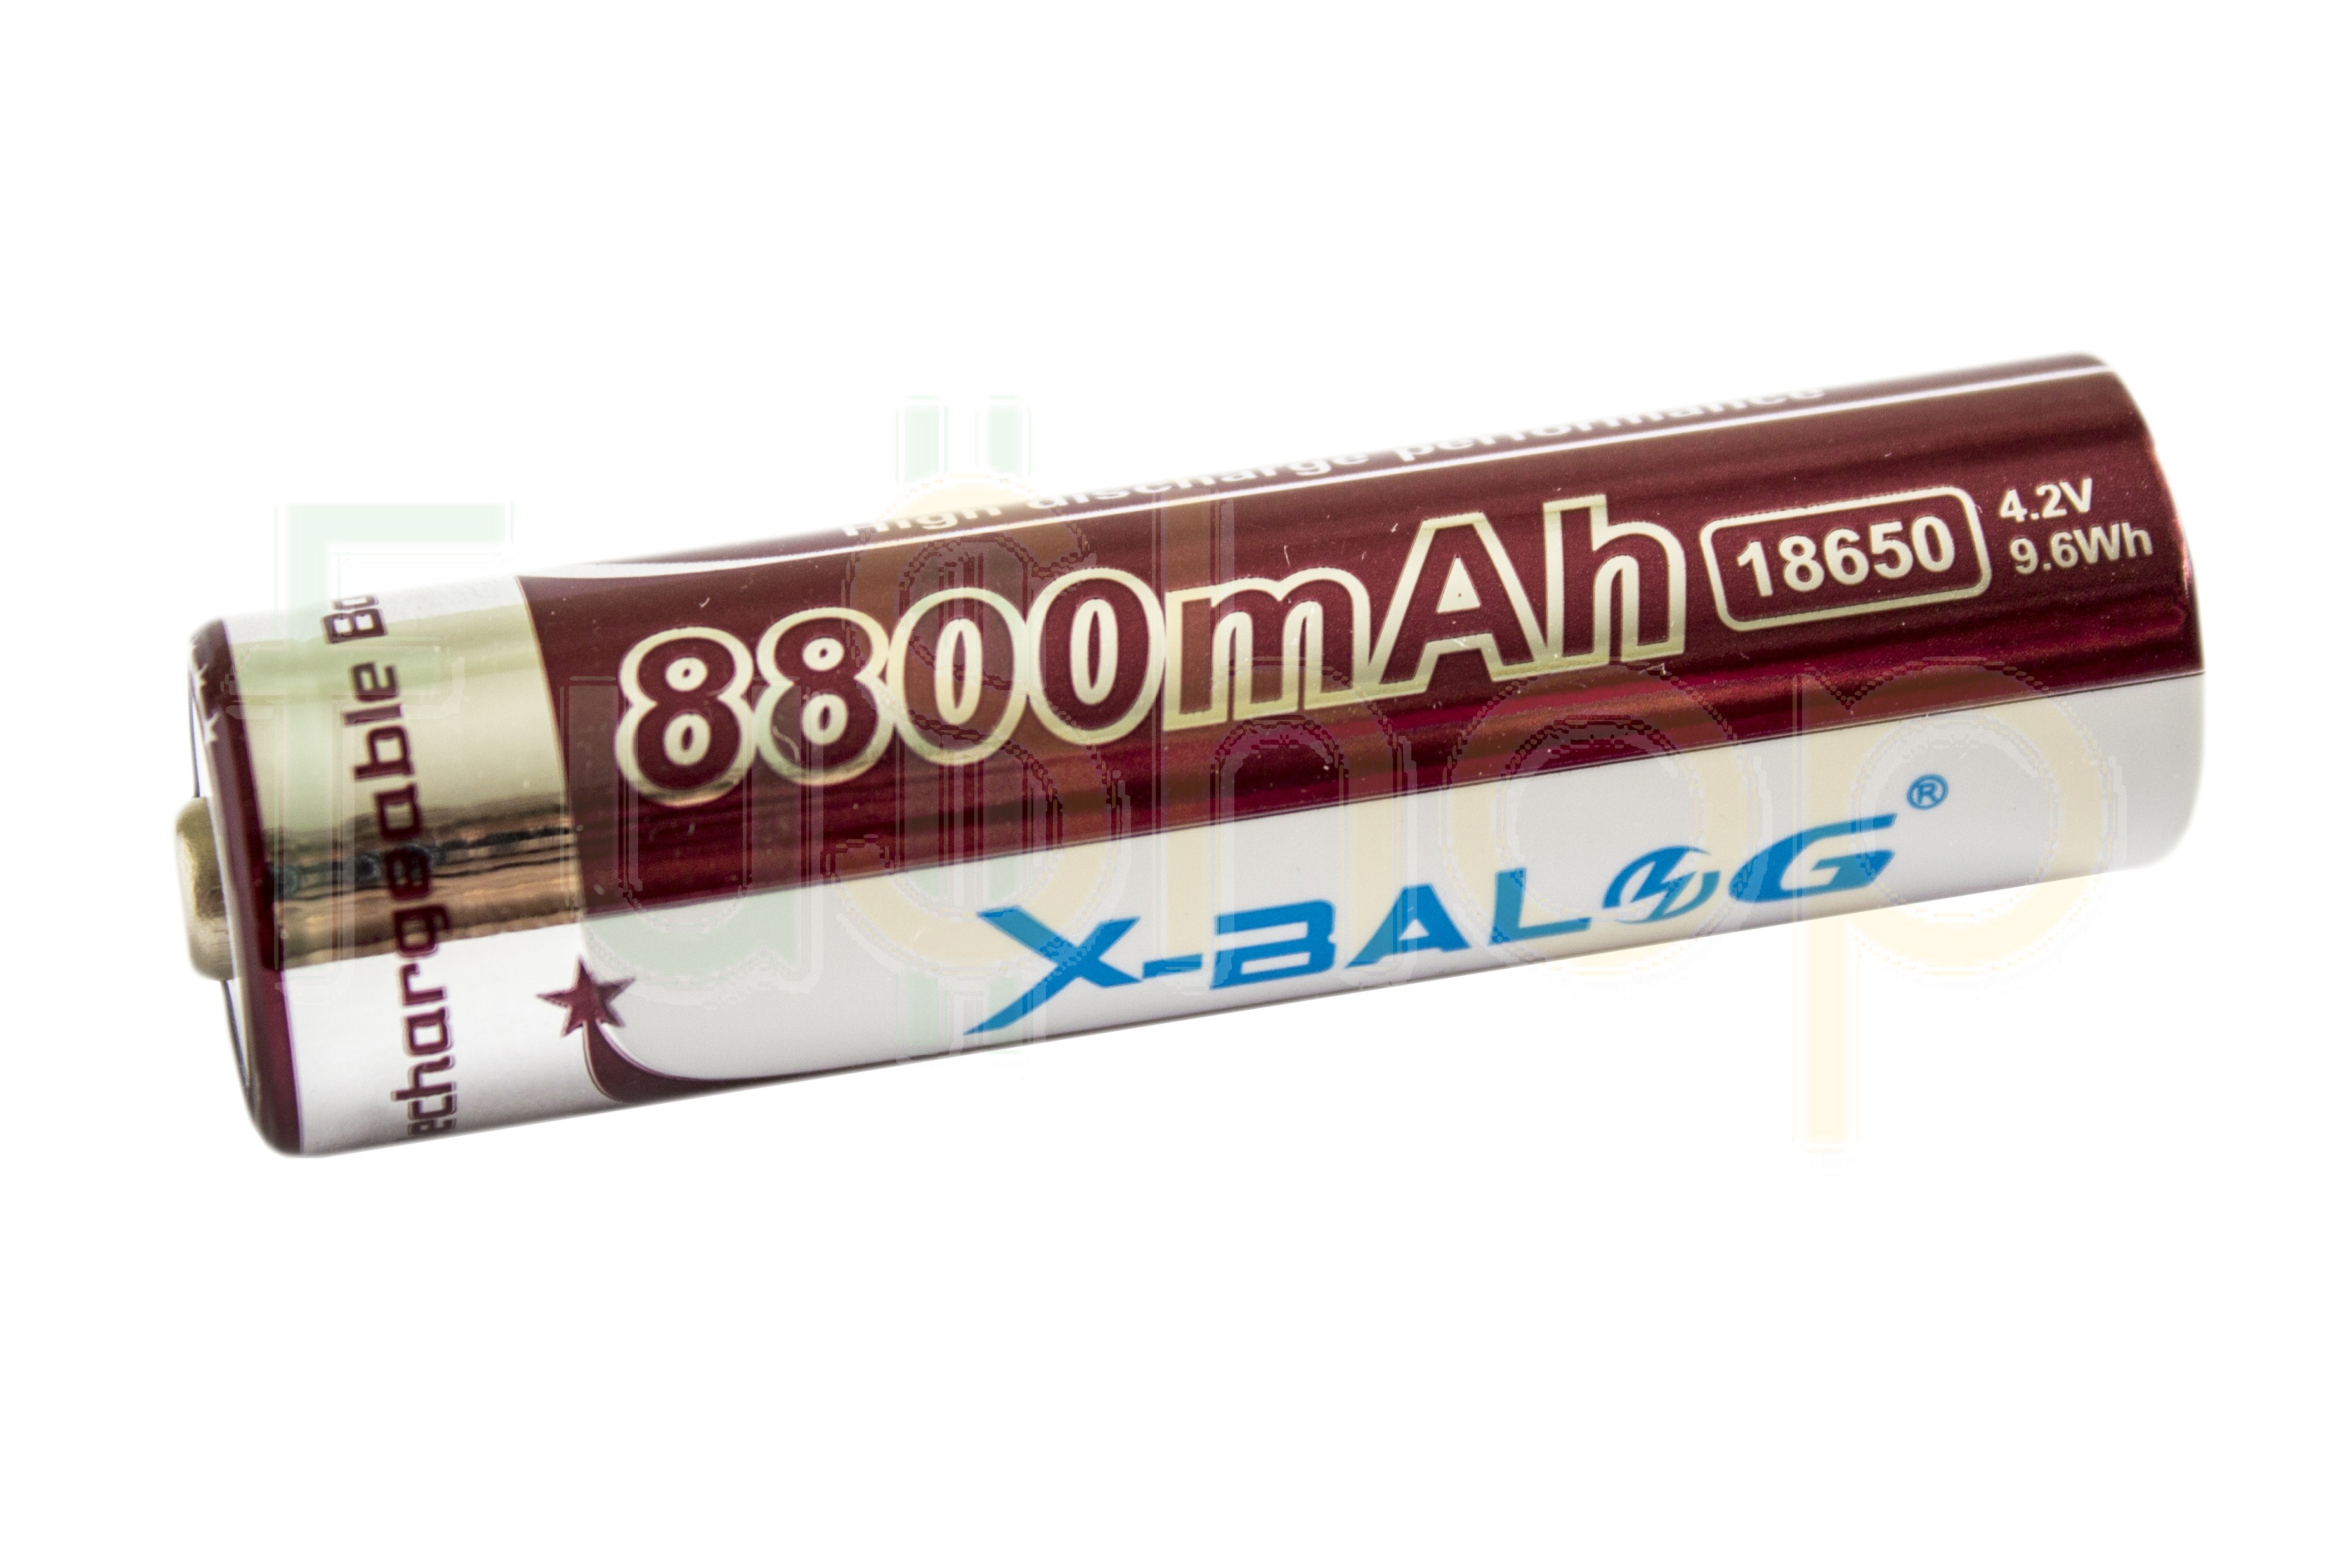  X-Balog 18650 8800mAh Li-ion Battery / fullshop.com .